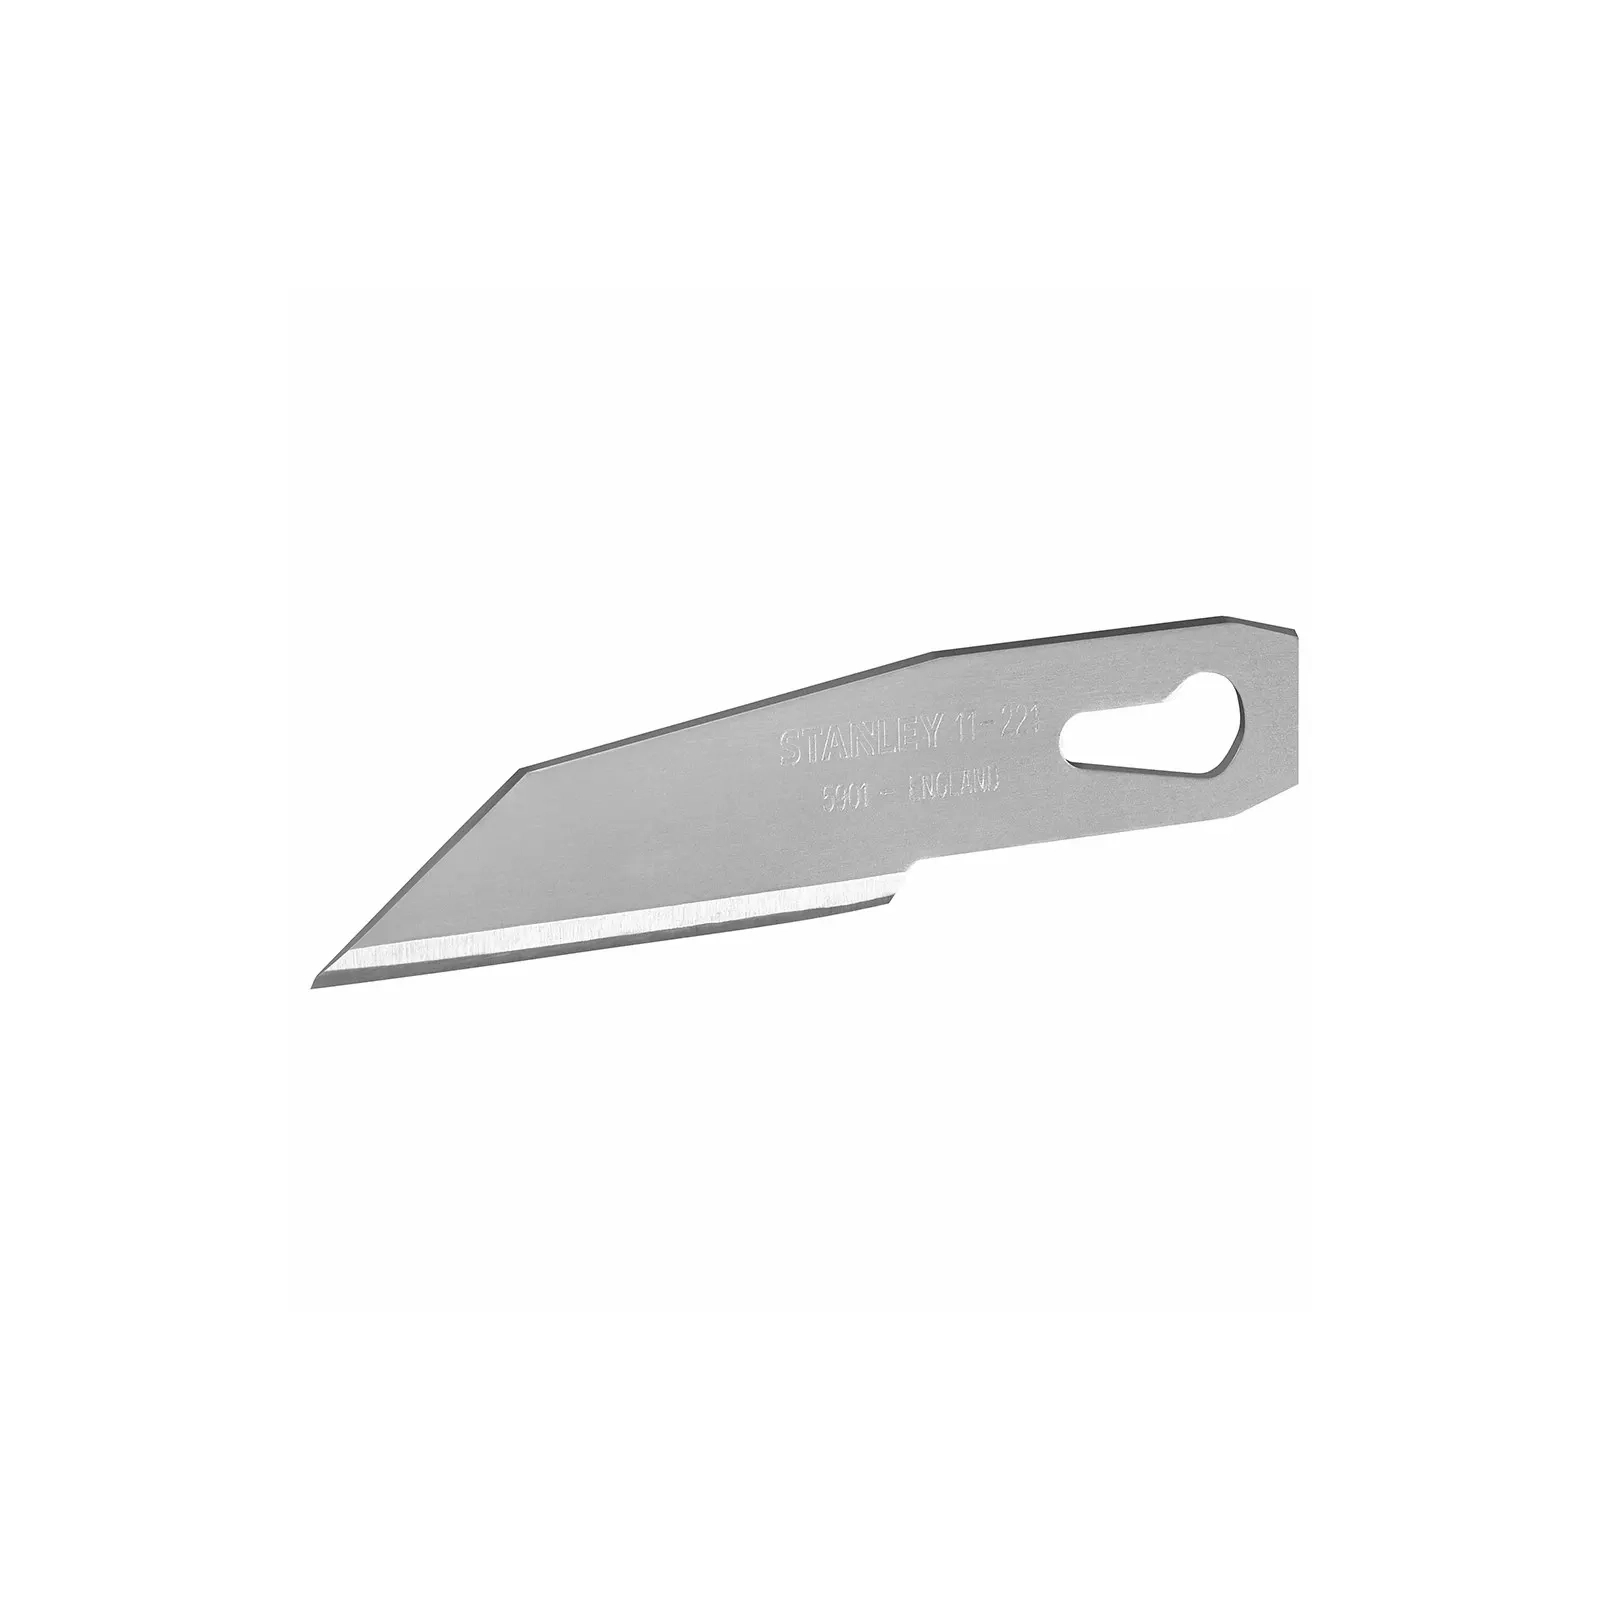 Лезвие Stanley 5901 для ножей для поделочных работ, 3 штуки (0-11-221)